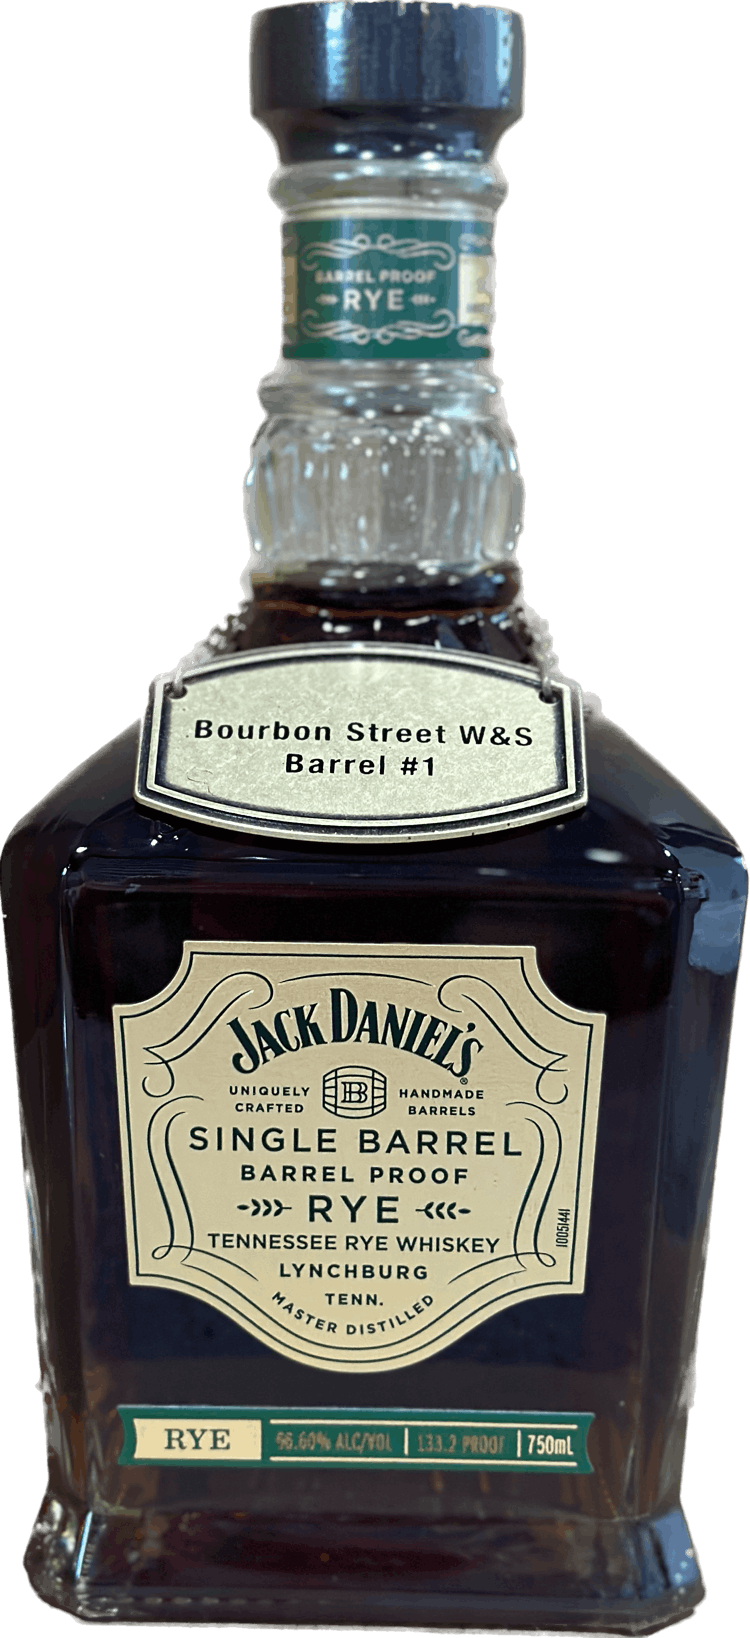 Jack Daniel's BSWS "Store Pick" Single Barrel Barrel Proof Rye